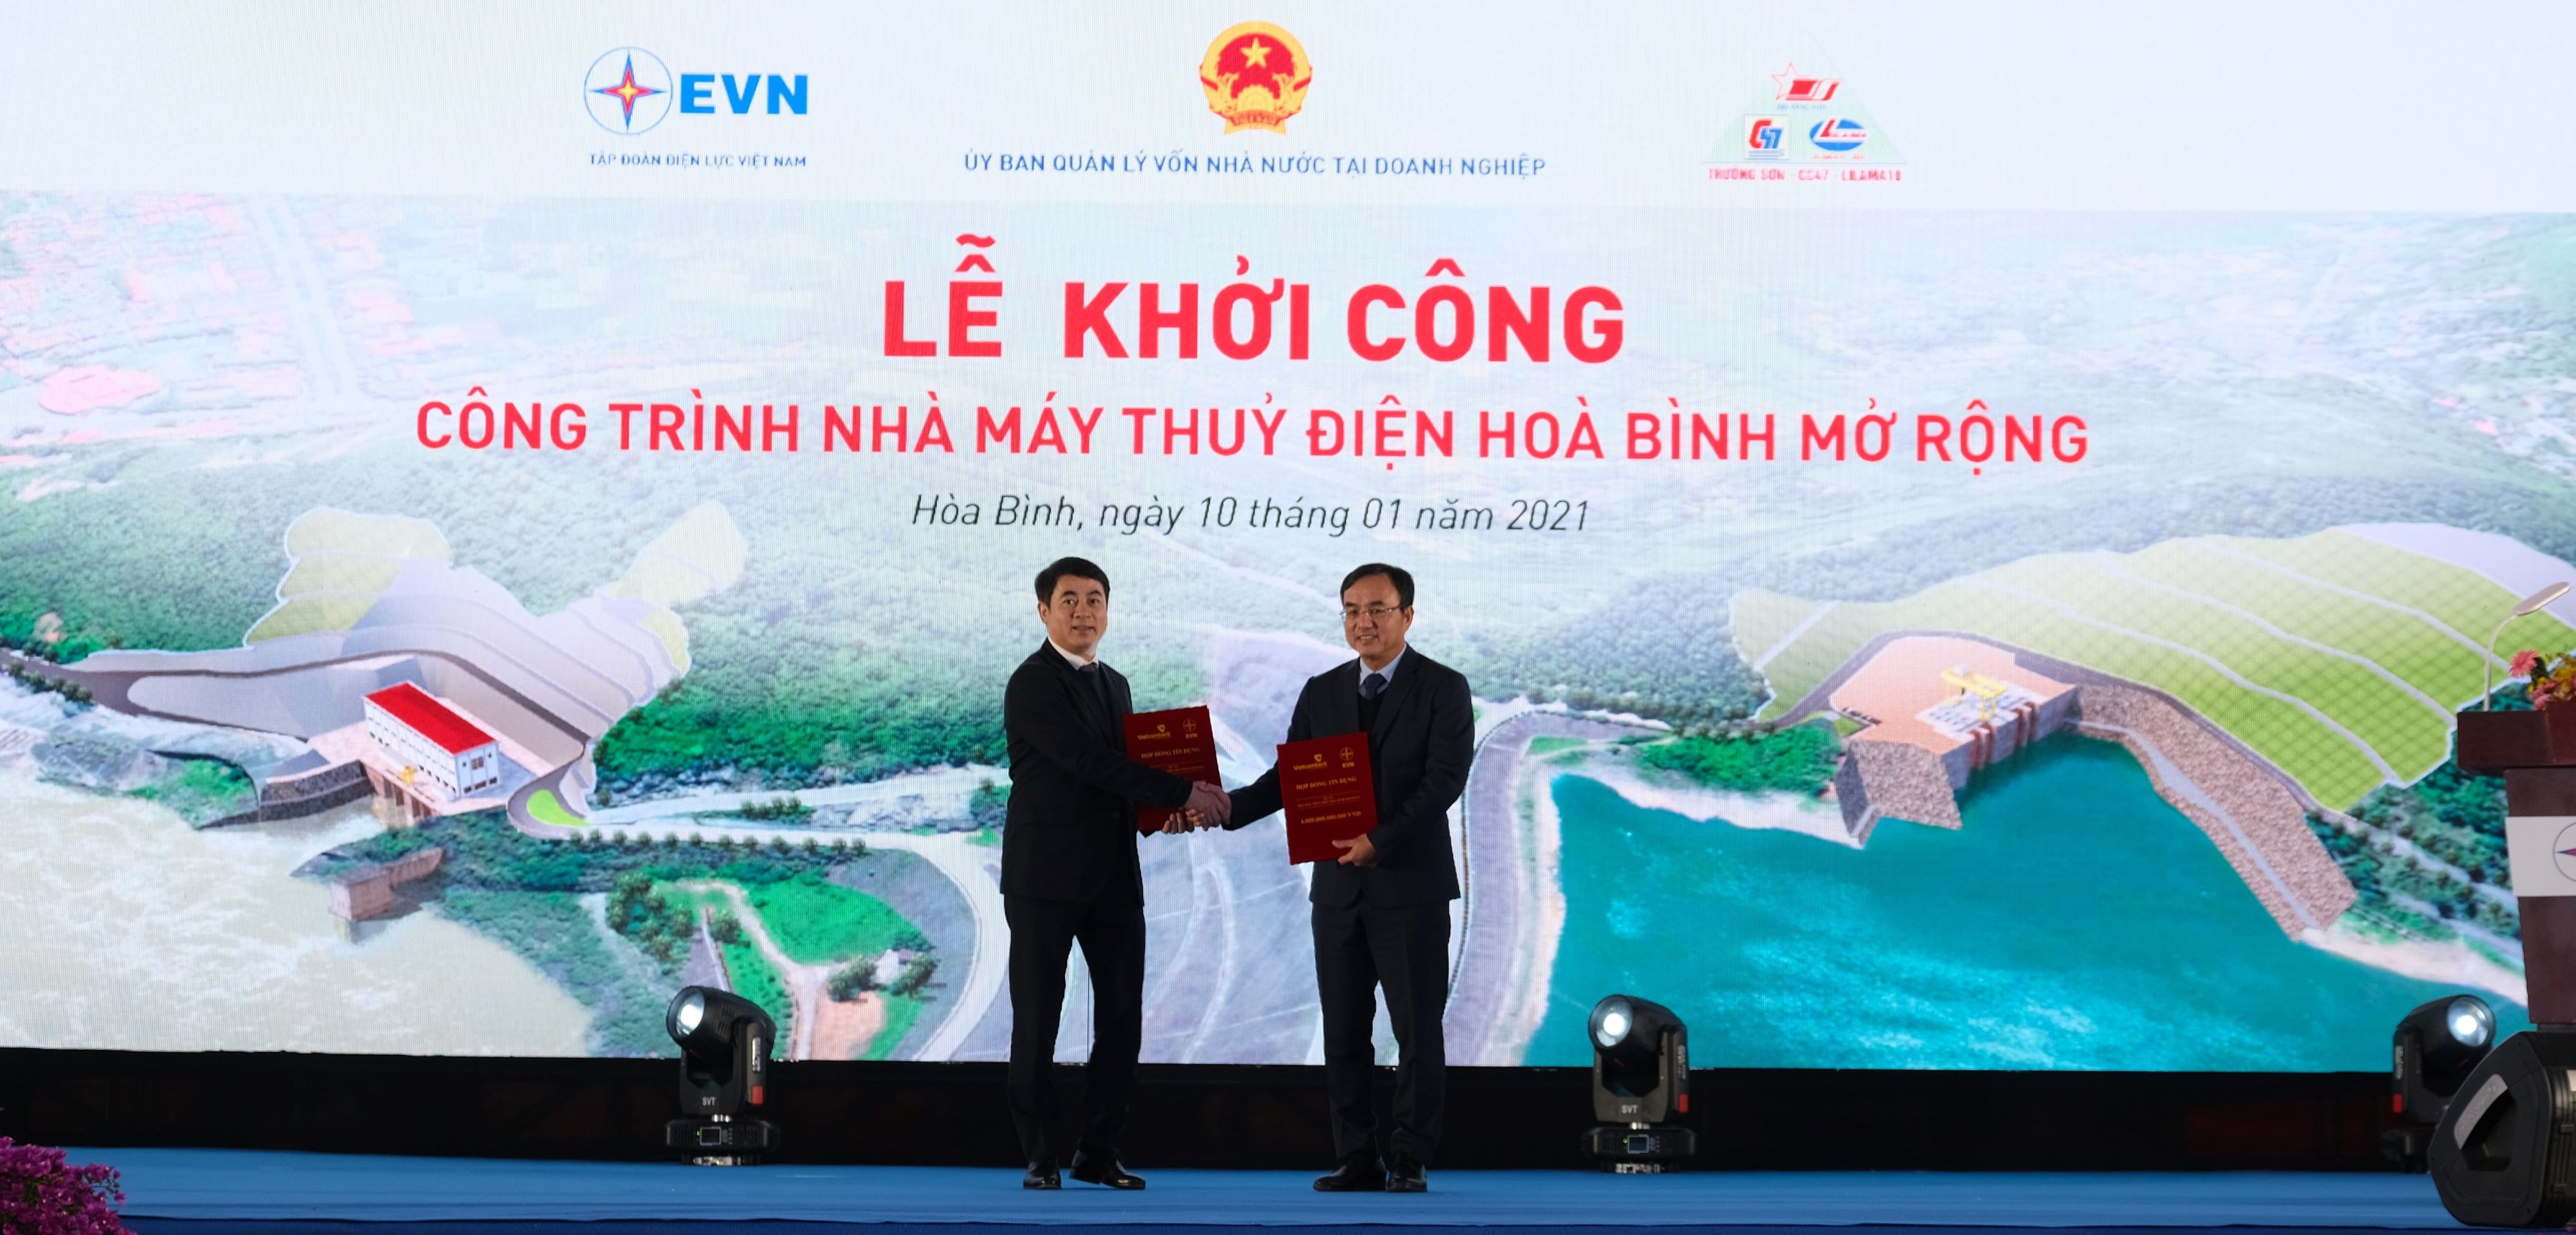 Vietcombank cấp khoản tín dụng 4.000 tỷ đồng tài trợ dư án công trình nhà máy thủy điện Hòa Bình mở rộng của Tập đoàn Điện lực Việt Nam